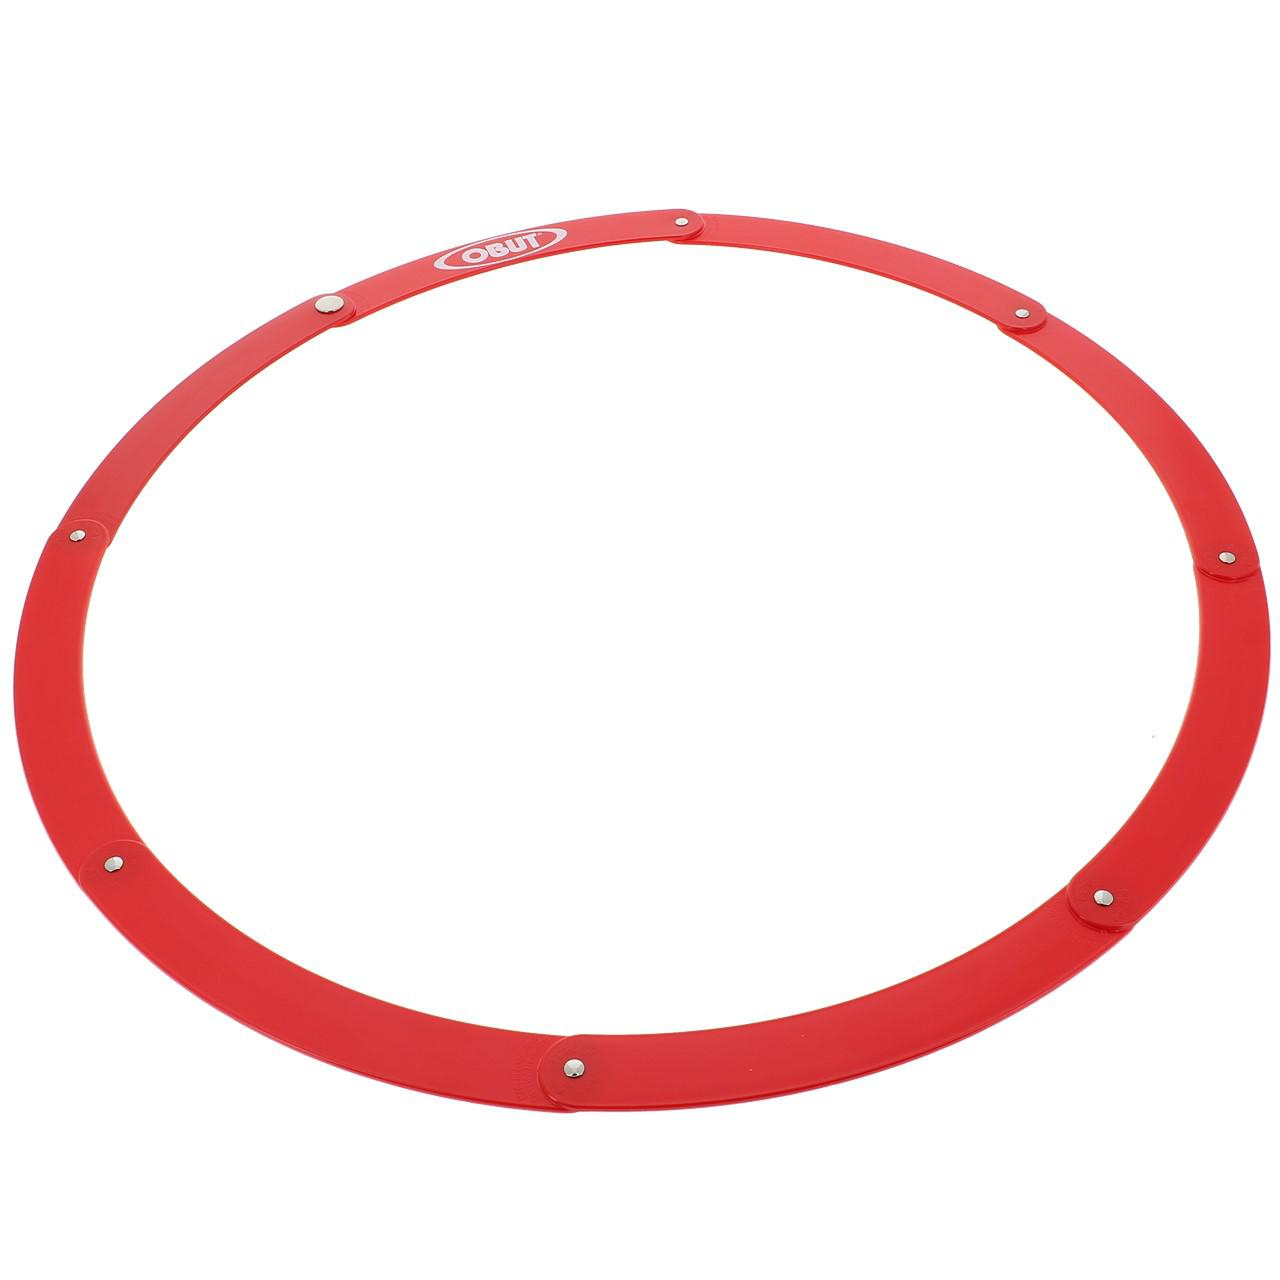 Cercle de pétanque pliant rouge - Obut